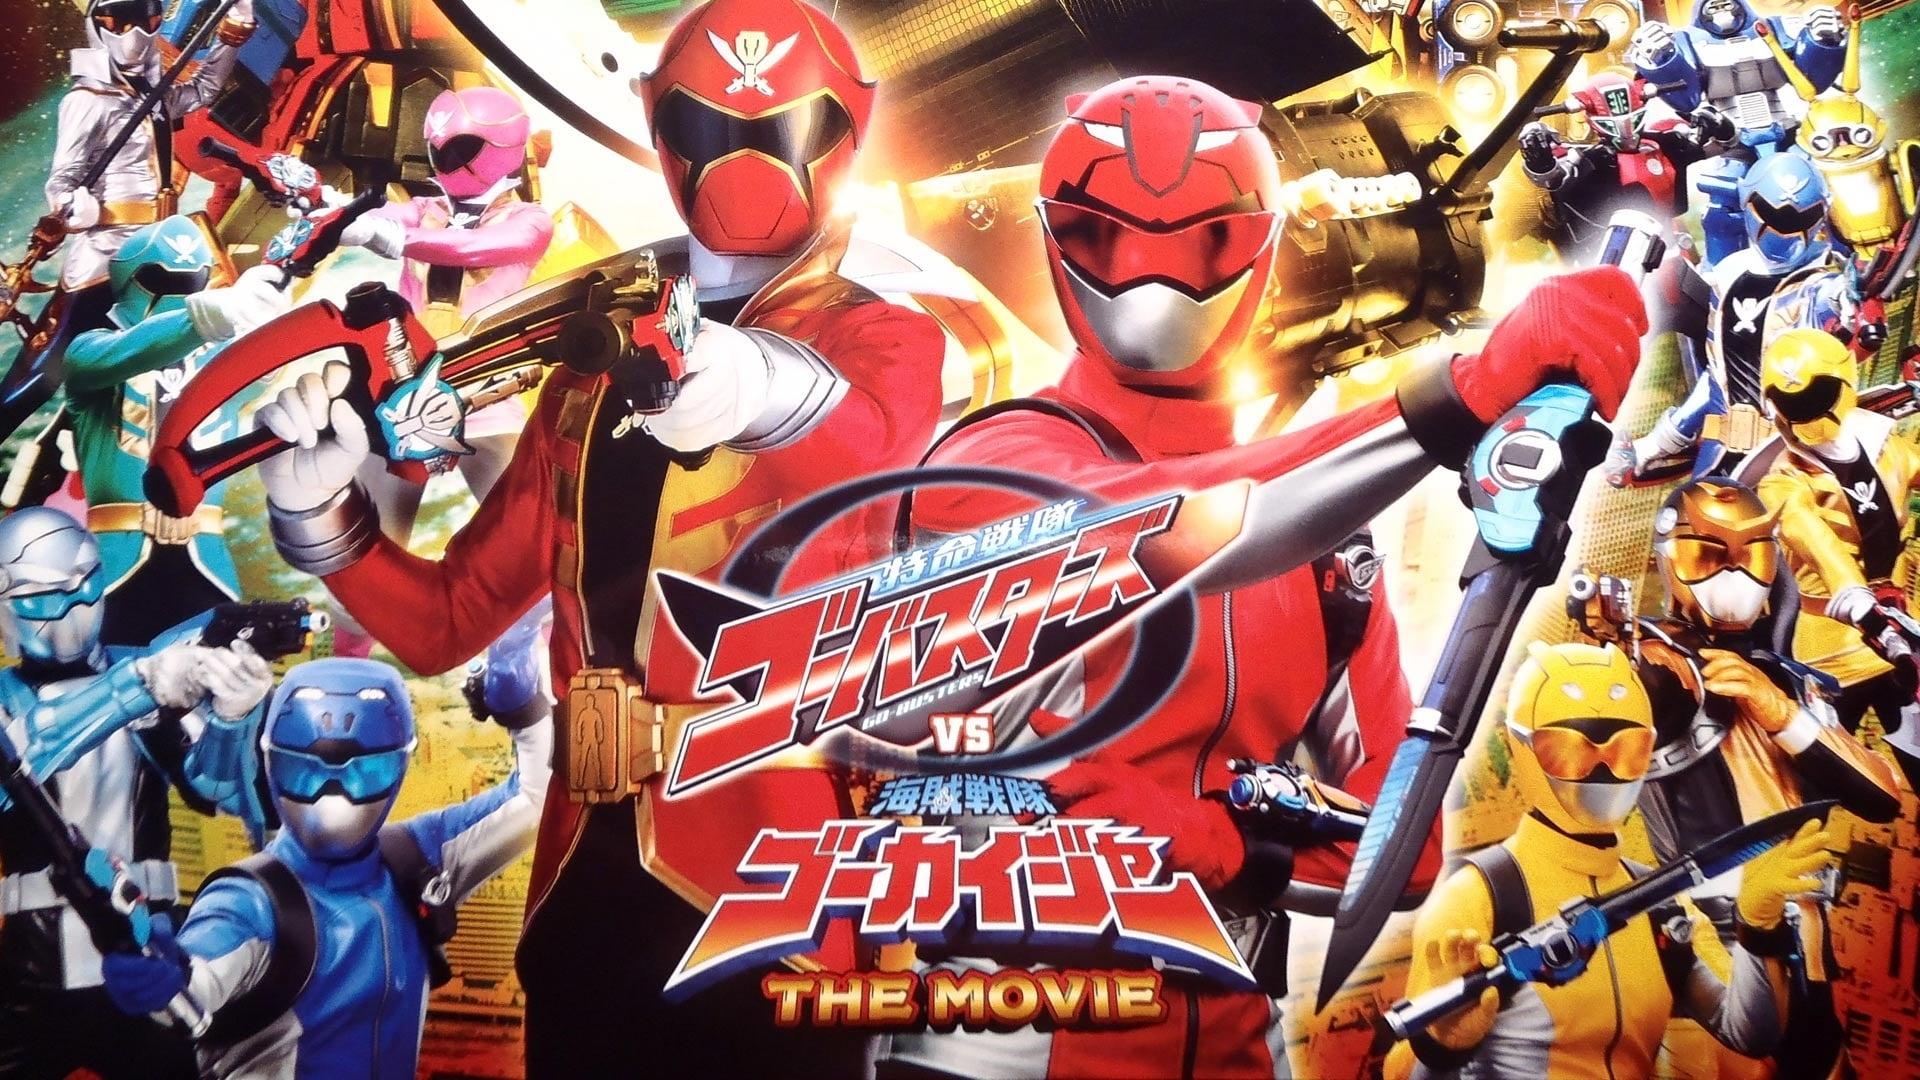 Tokumei Sentai Go-Busters vs. Kaizoku Sentai Gokaiger: The Movie backdrop